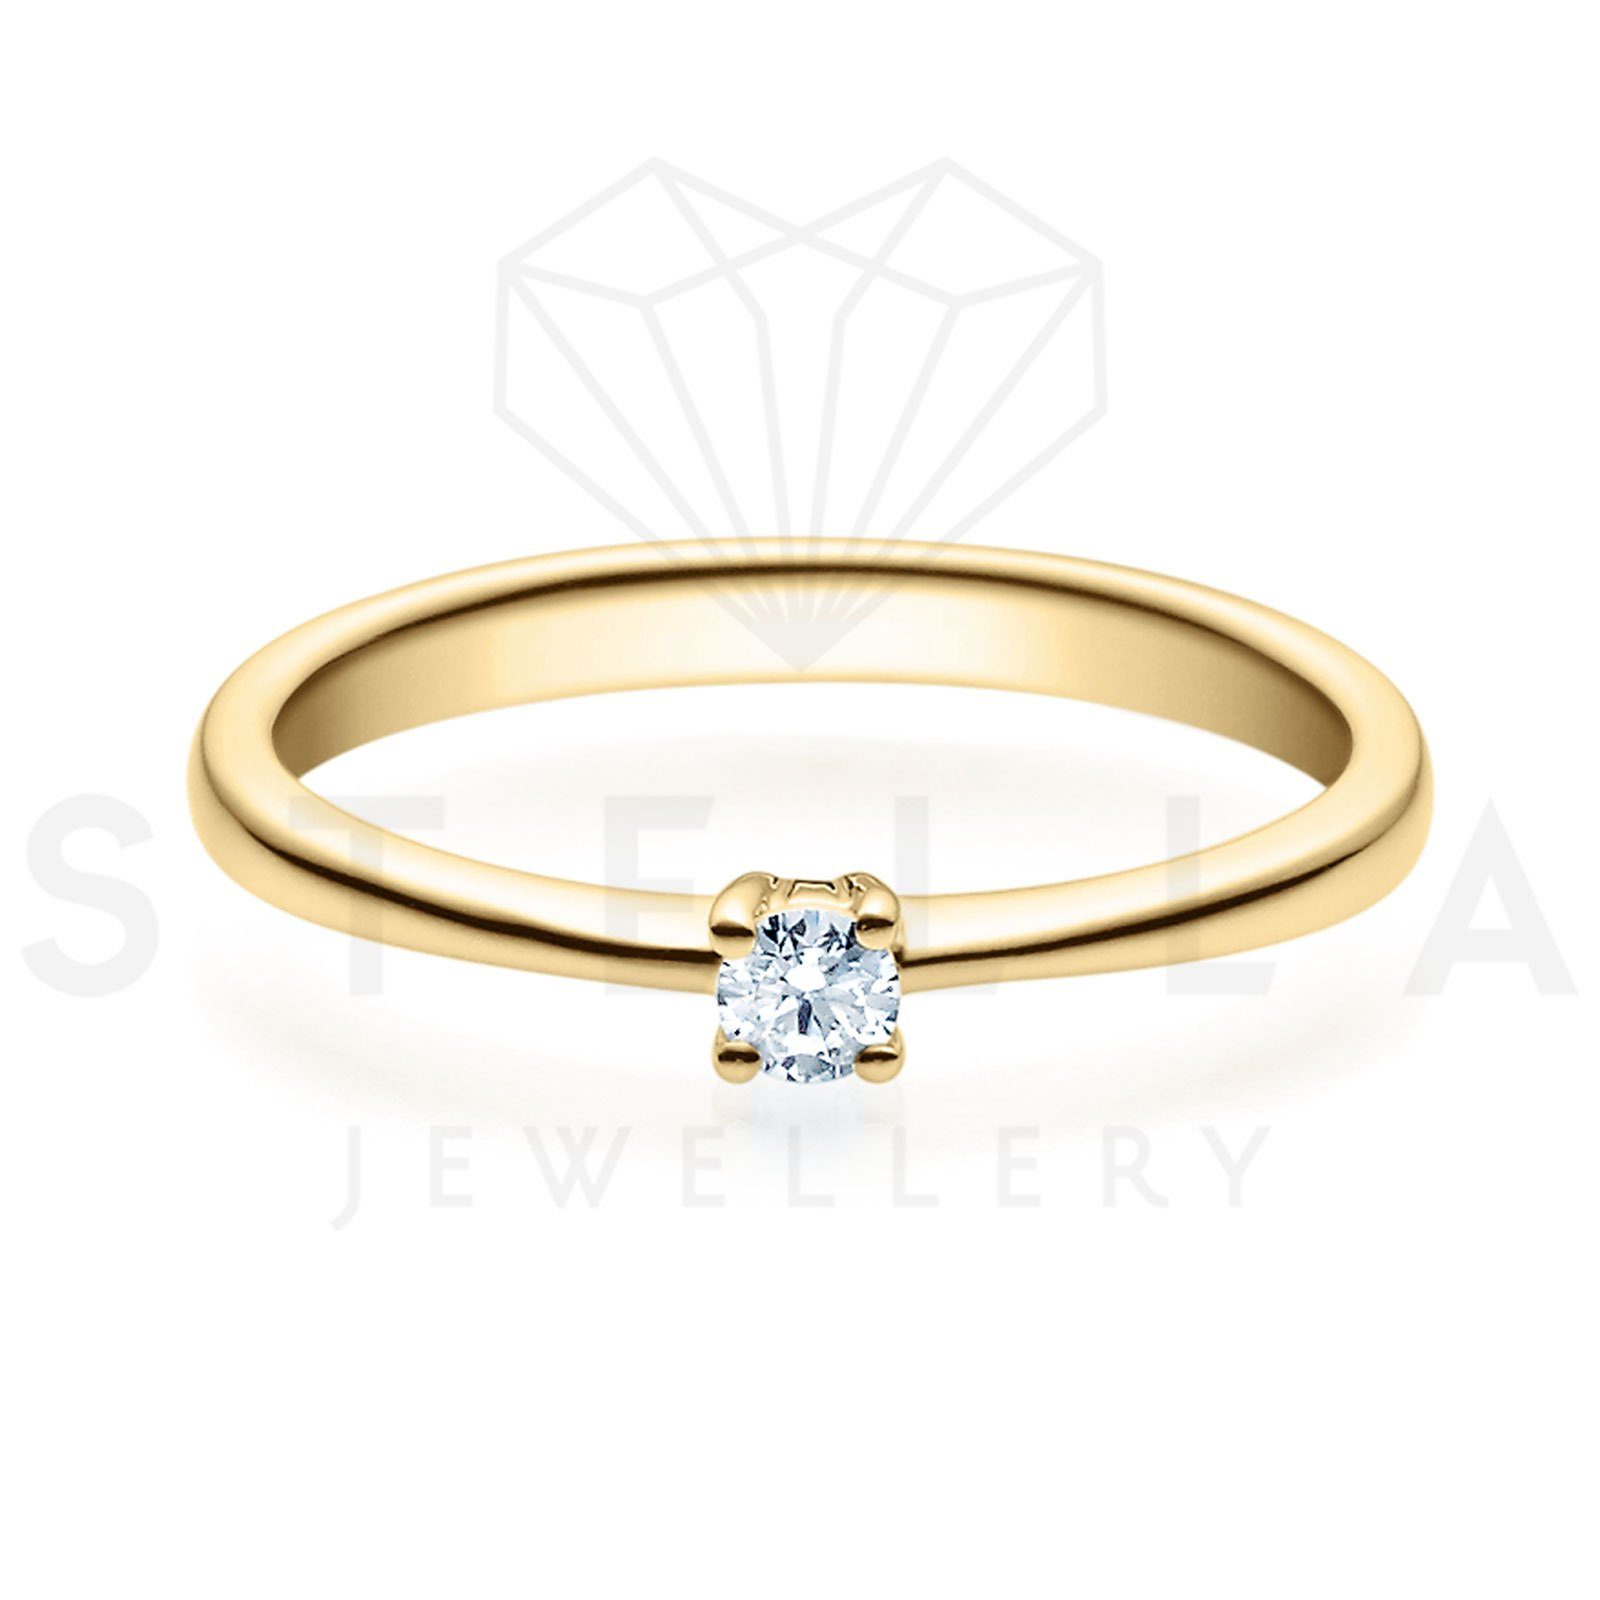 Solitärring mit 0,05ct. - Verlobungsring Stella-Jewellery Poliert Etui), 0,05ct. Brillant 375er Gelbgold (inkl. Diamant